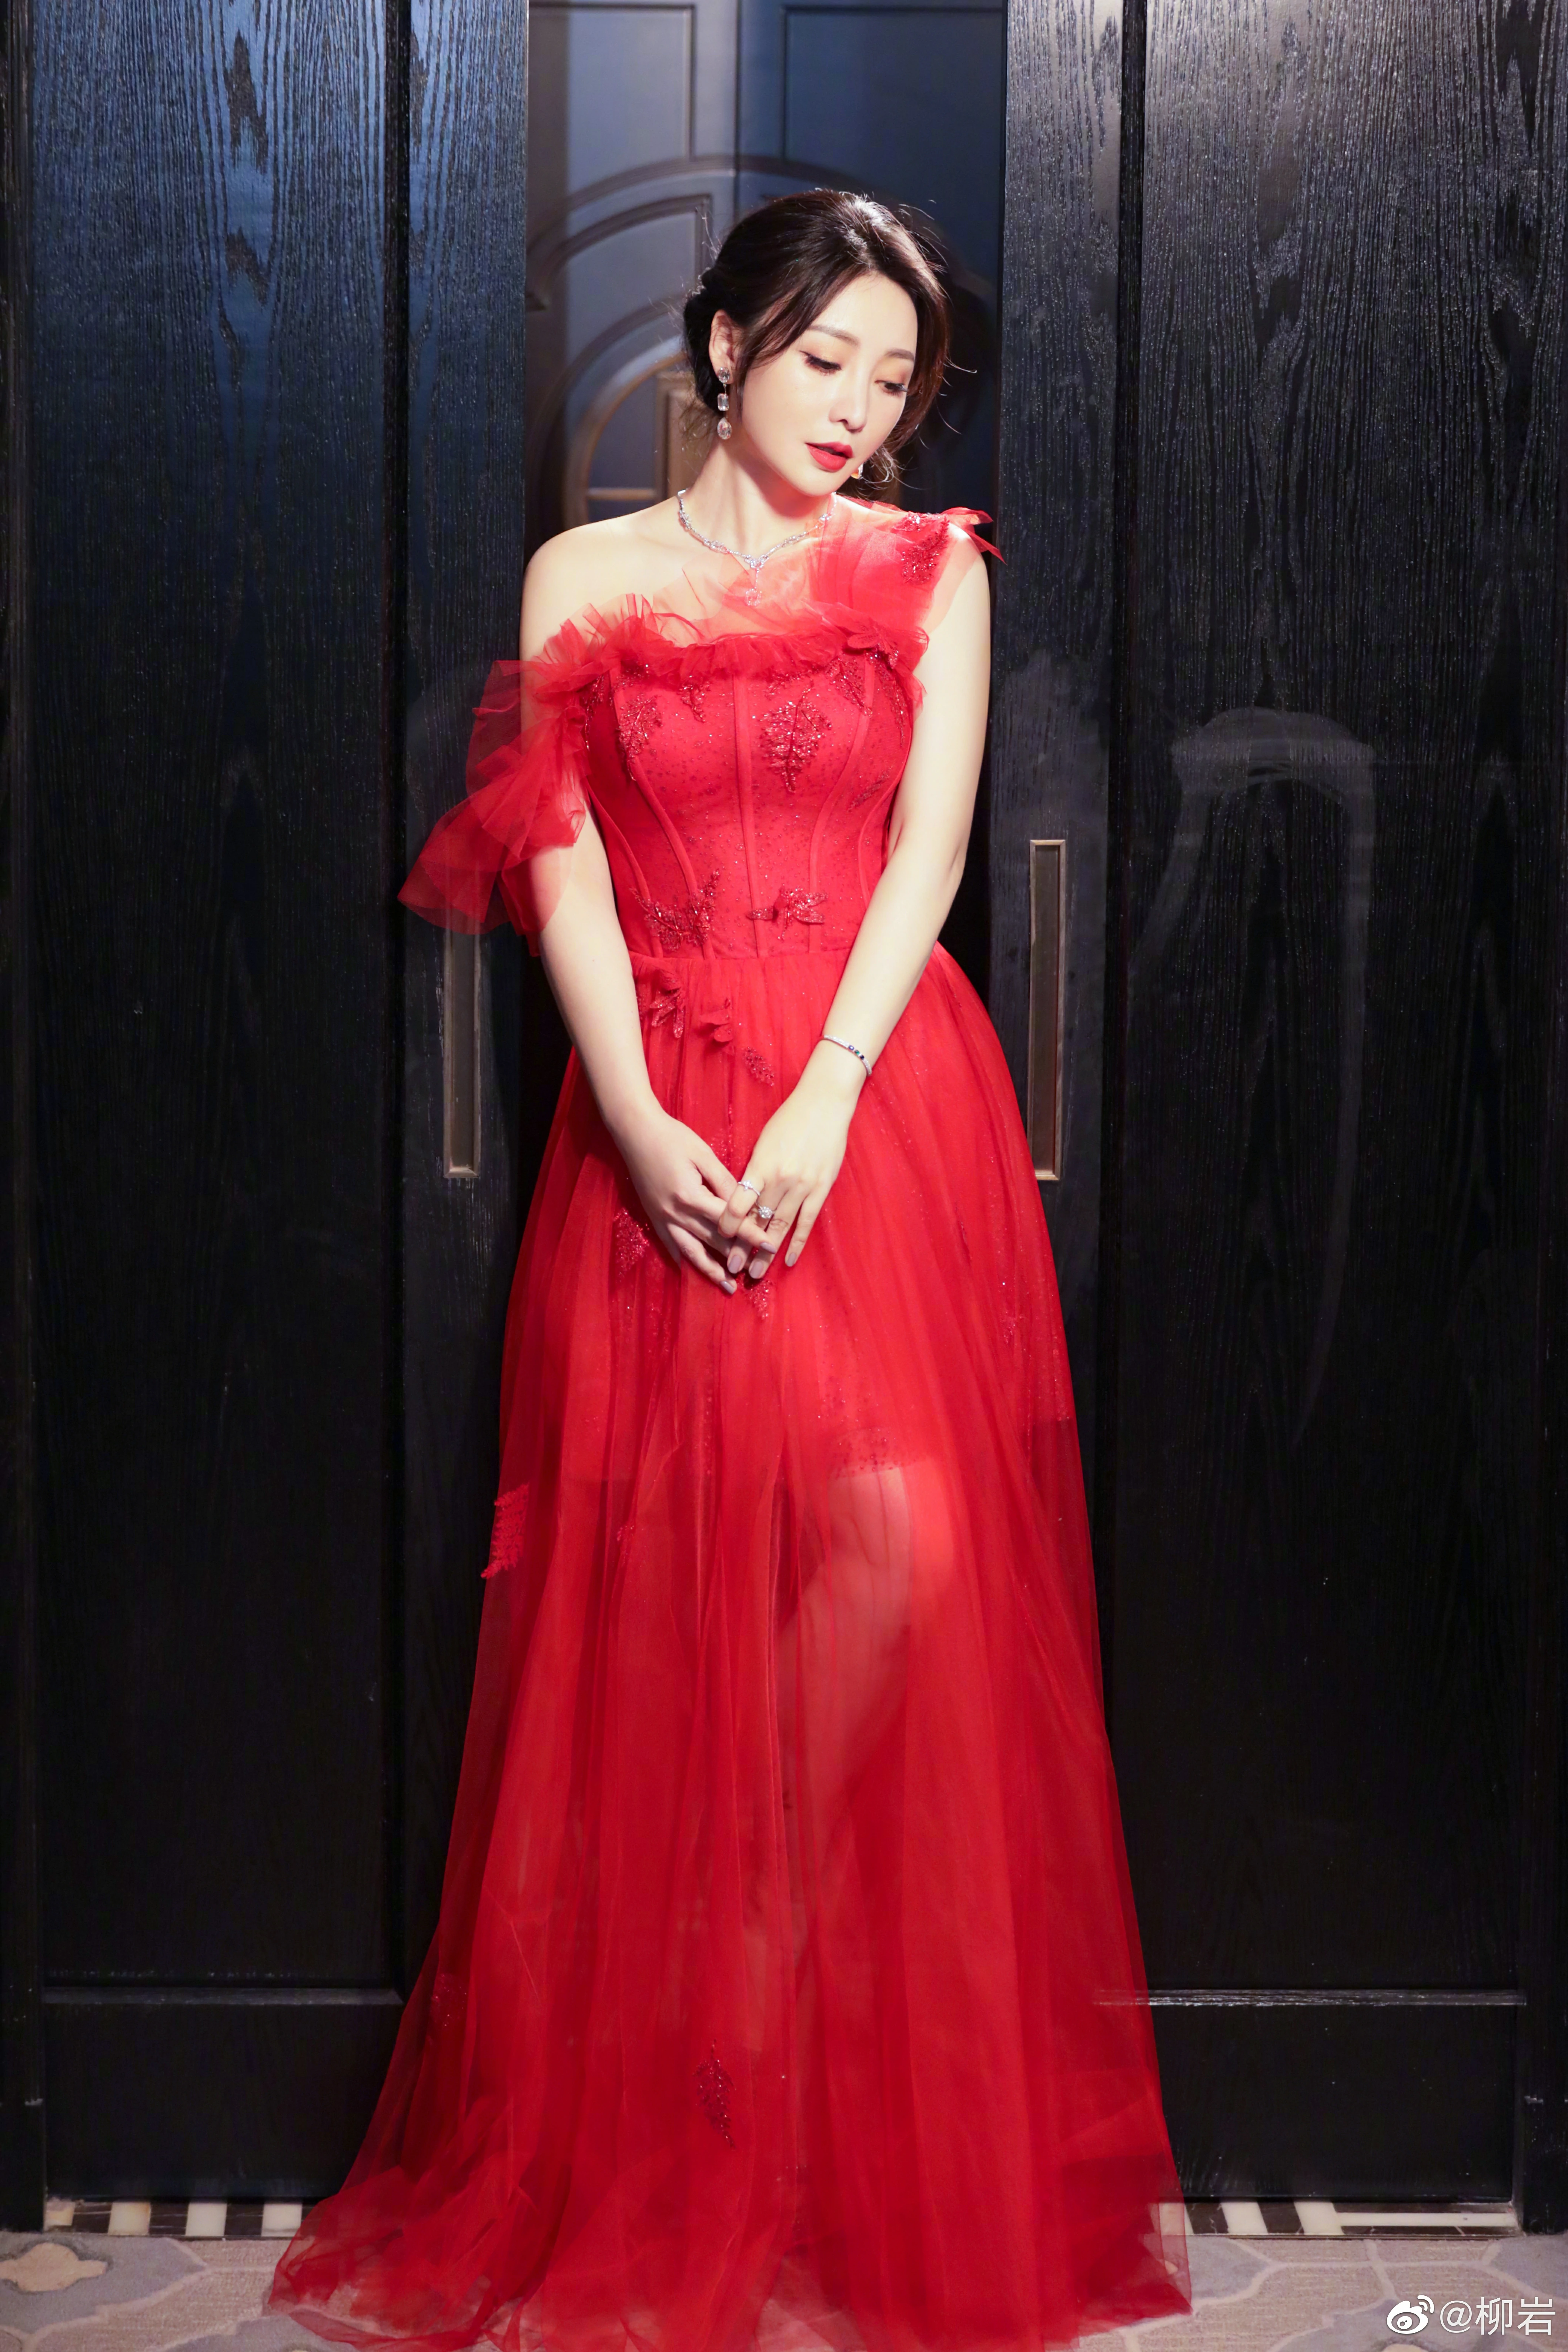 柳岩一袭红色纱裙出席活动 露美背香肩气质优雅迷人,